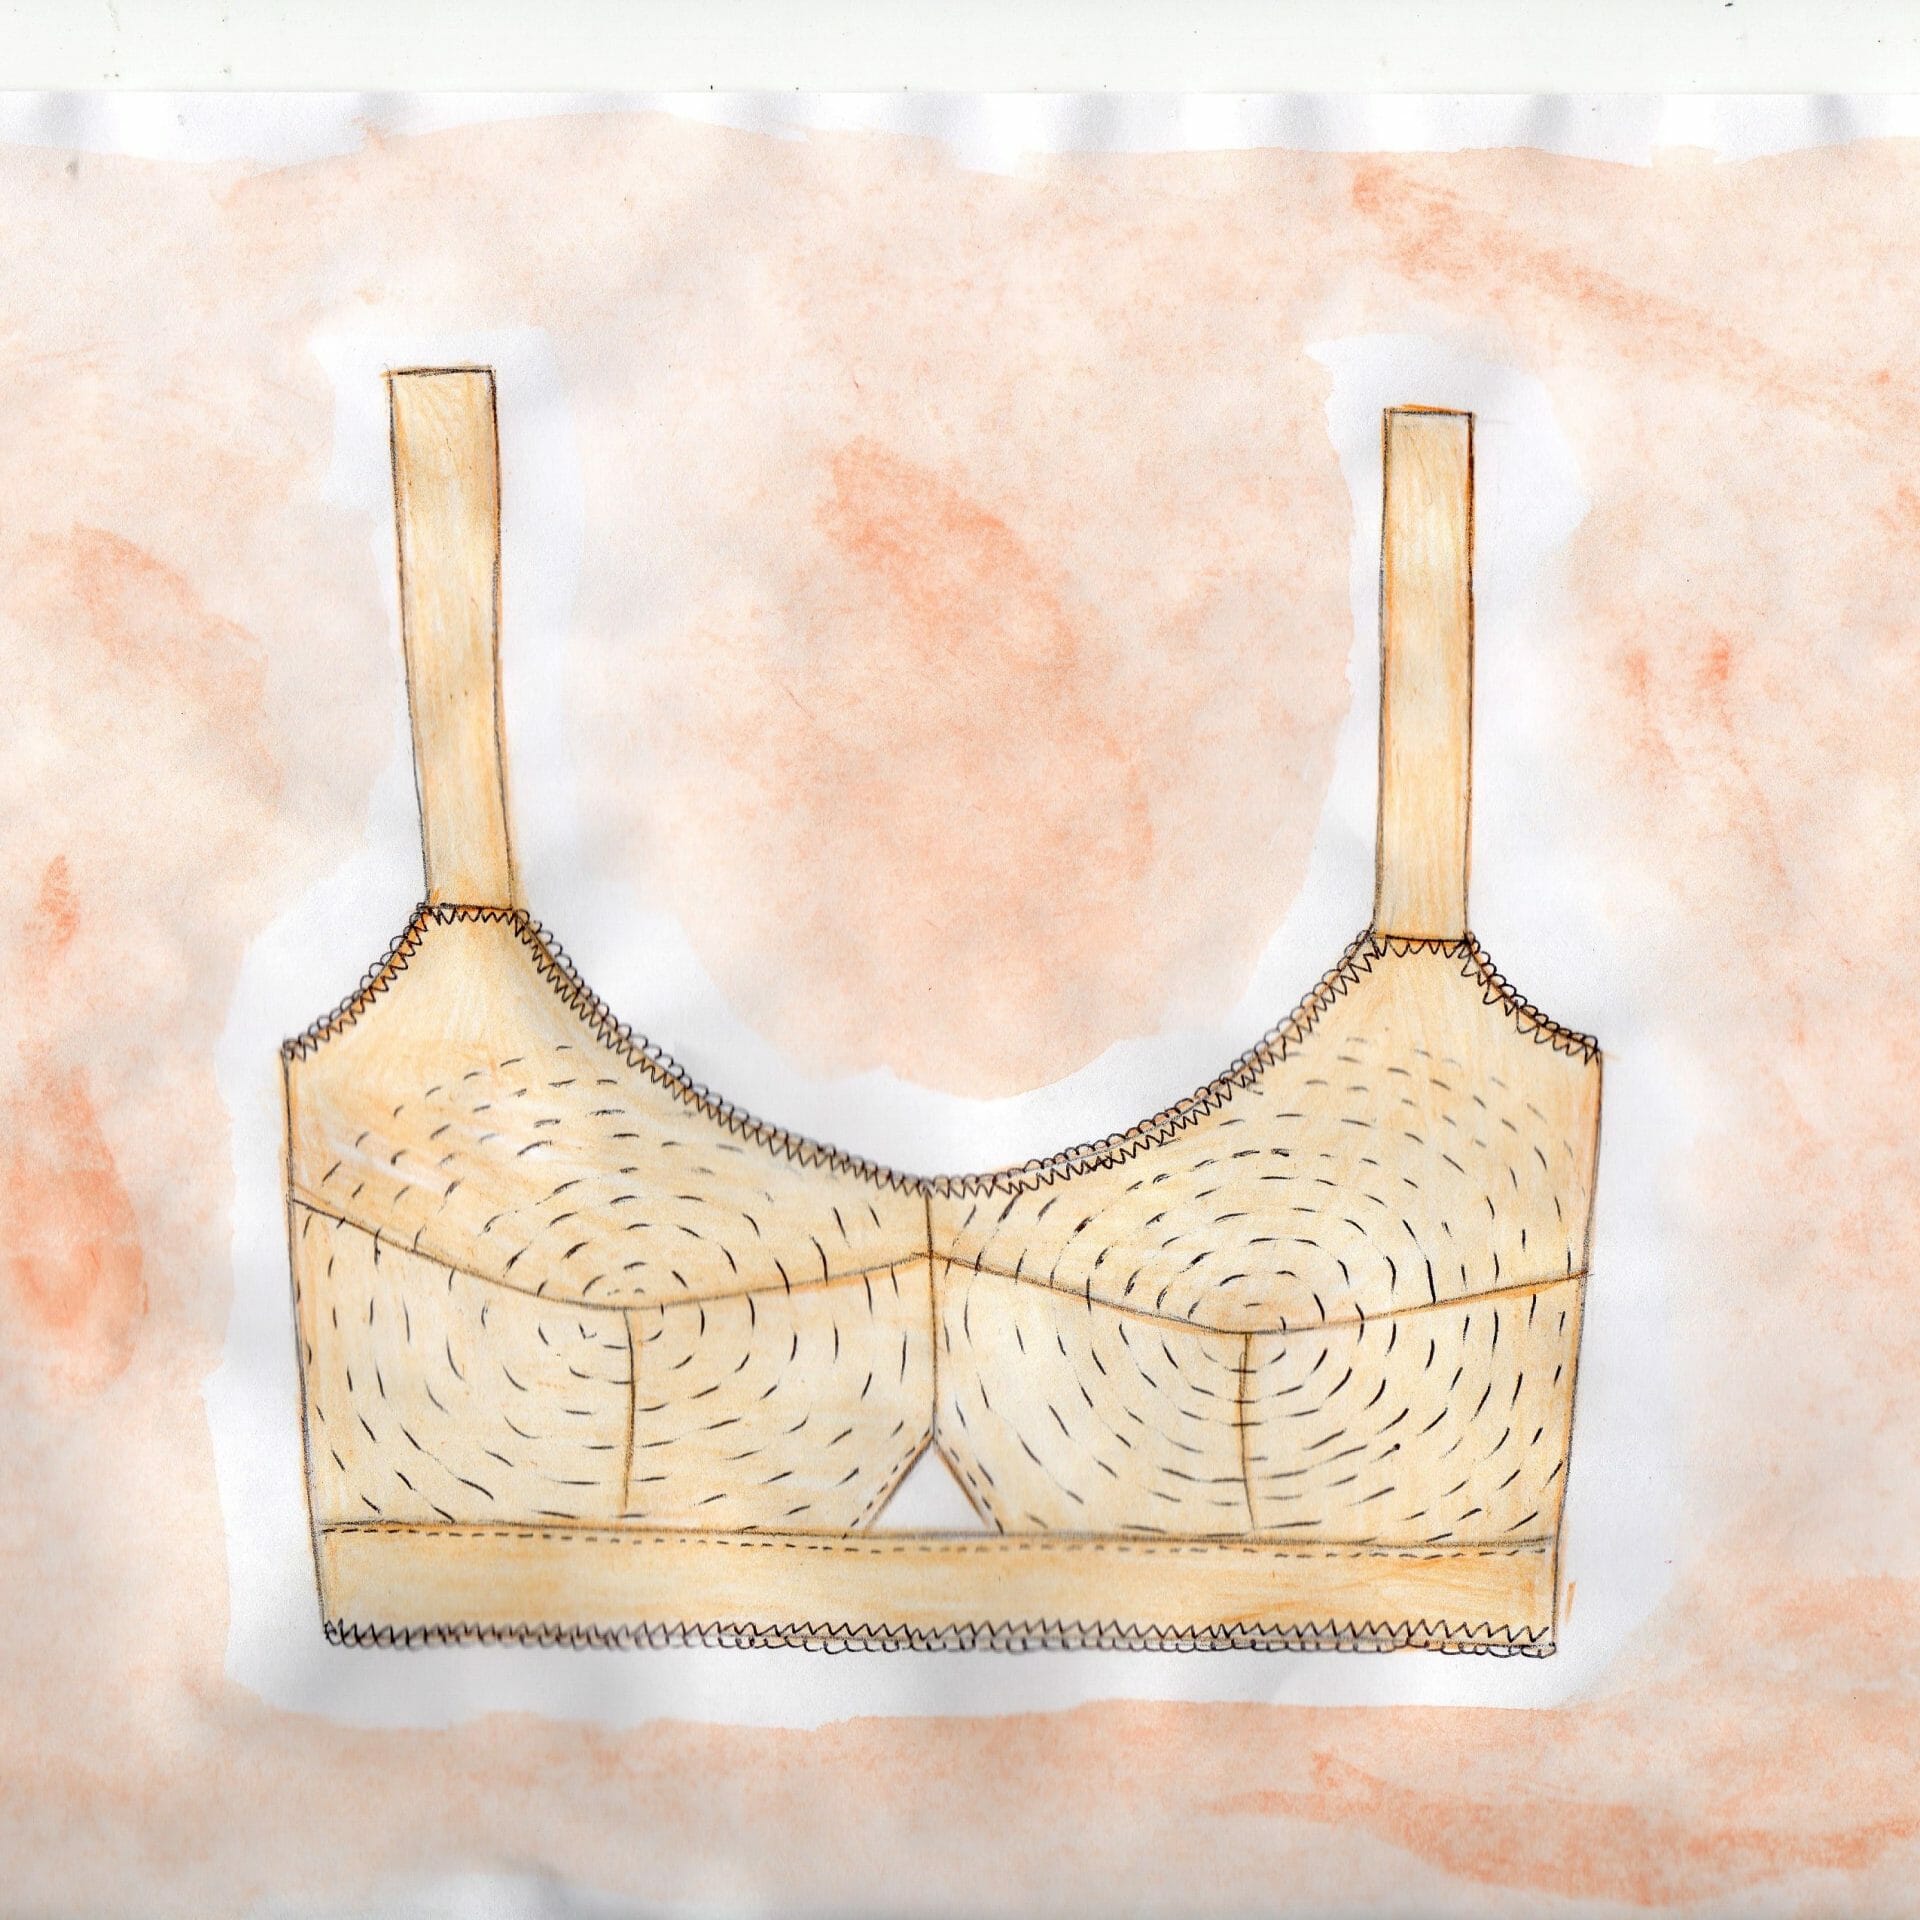 Bullet bra pattern plus size, 1950s bra pattern, 50s pattern